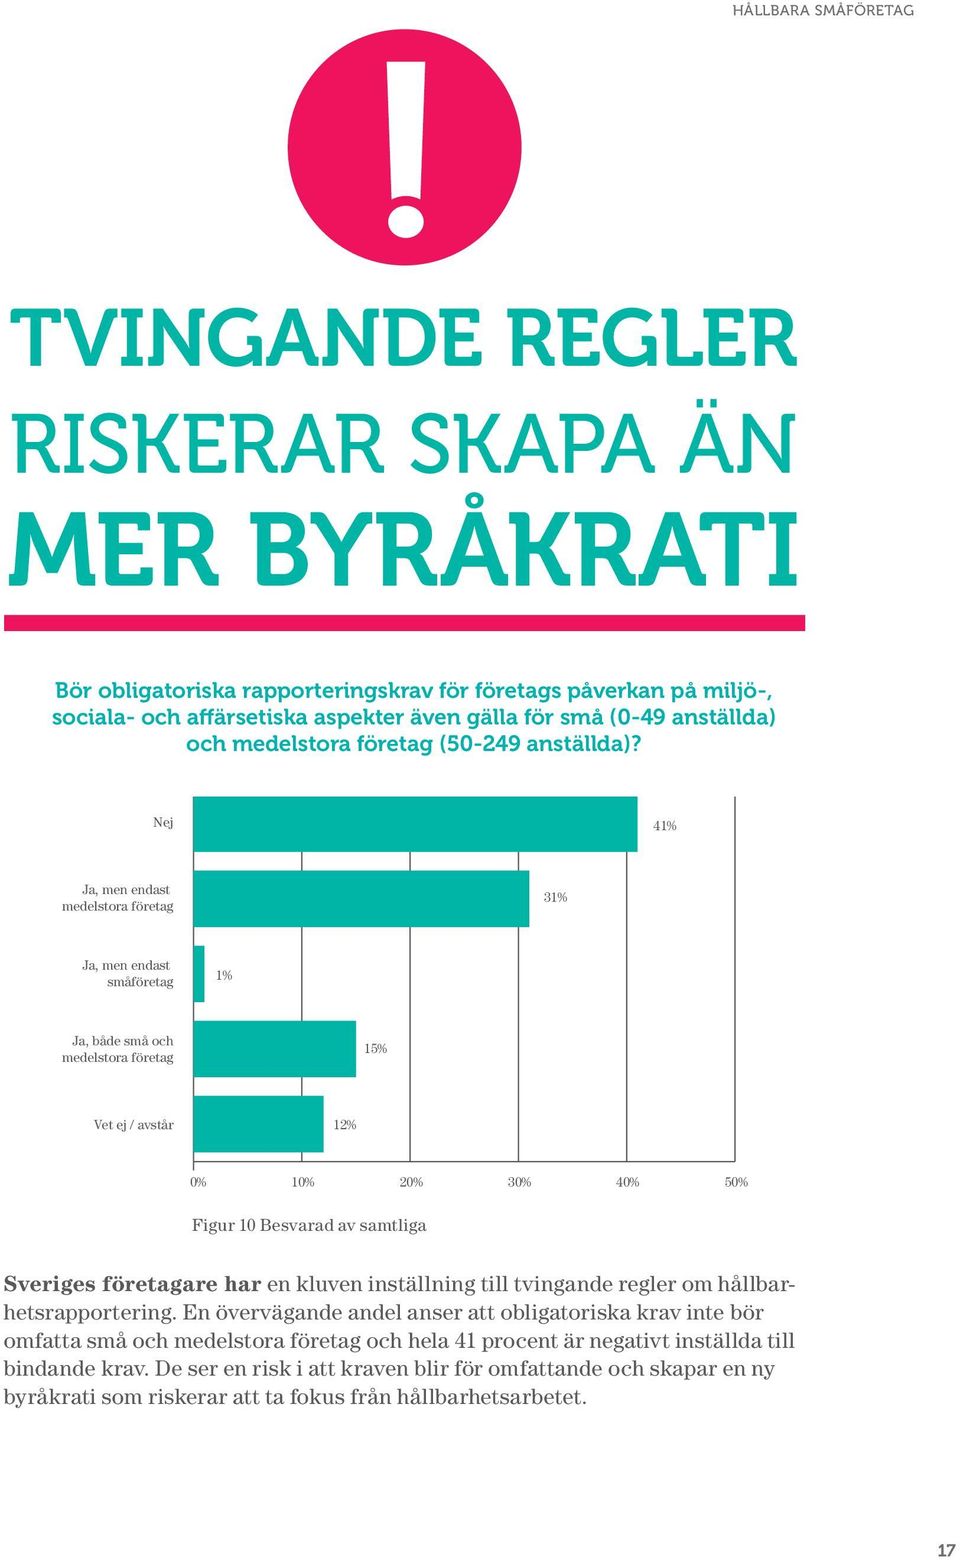 Nej 41% Ja, men endast medelstora företag 31% Ja, men endast småföretag 1% Ja, både små och medelstora företag 15% Vet ej / avstår 12% 0% 10% 20% 30% 40% 50% Figur 10 Besvarad av samtliga Sveriges